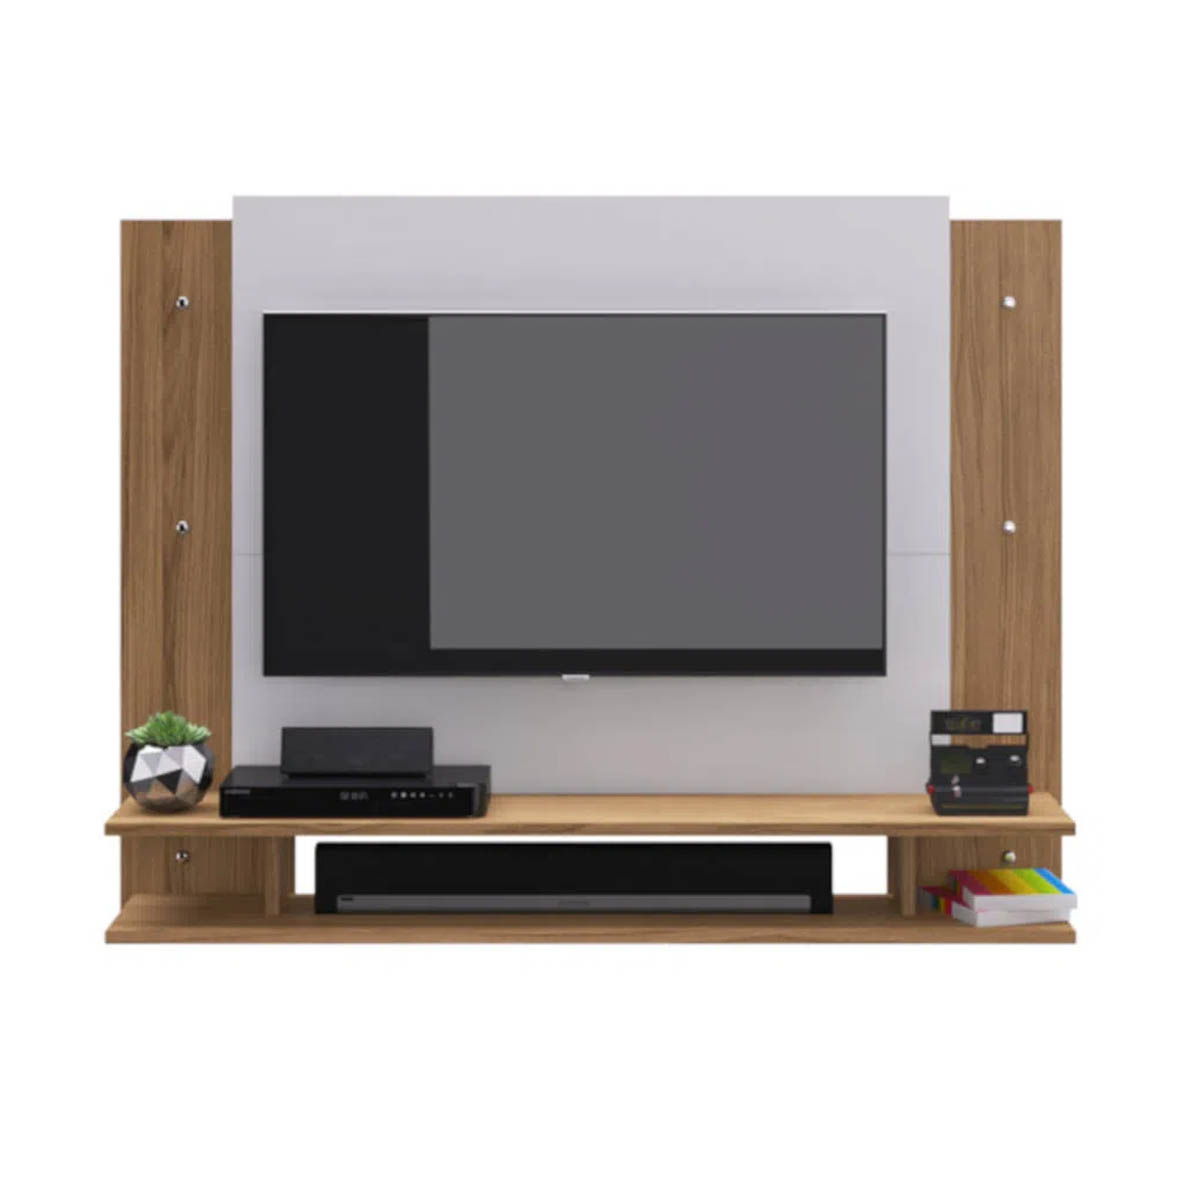 Mueble Modular De TV Con Paneles y Repisas Natural con Blanco Mod Retro KingsHouse